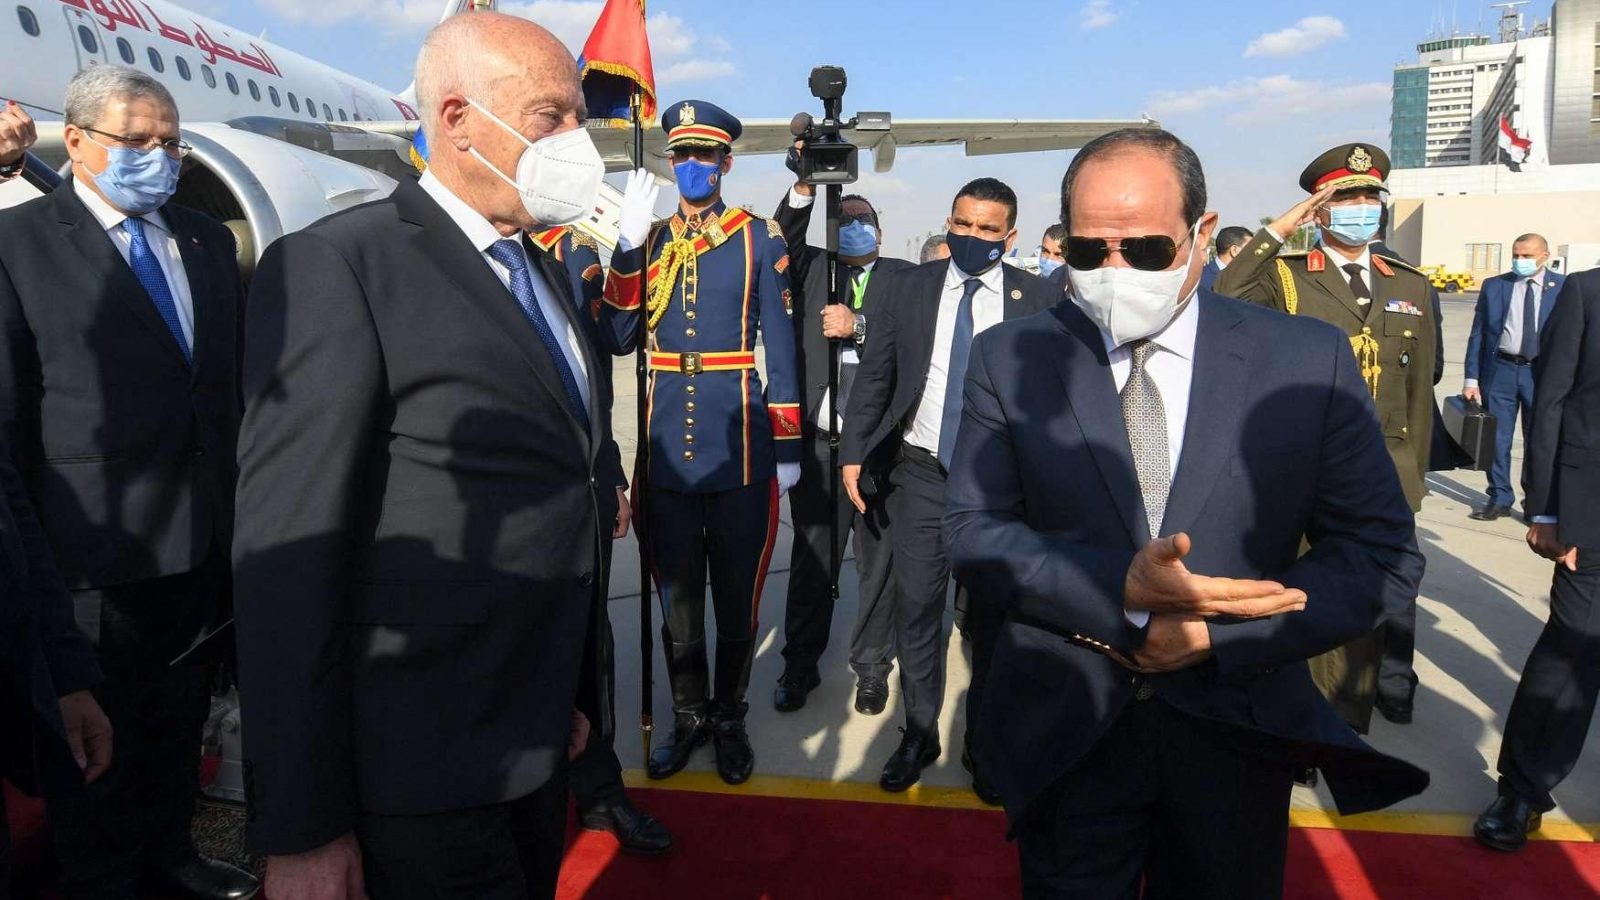 شاهد الفيديو: هذا ملخص زيارة الرئيس قيس سعيد إلى القاهرة